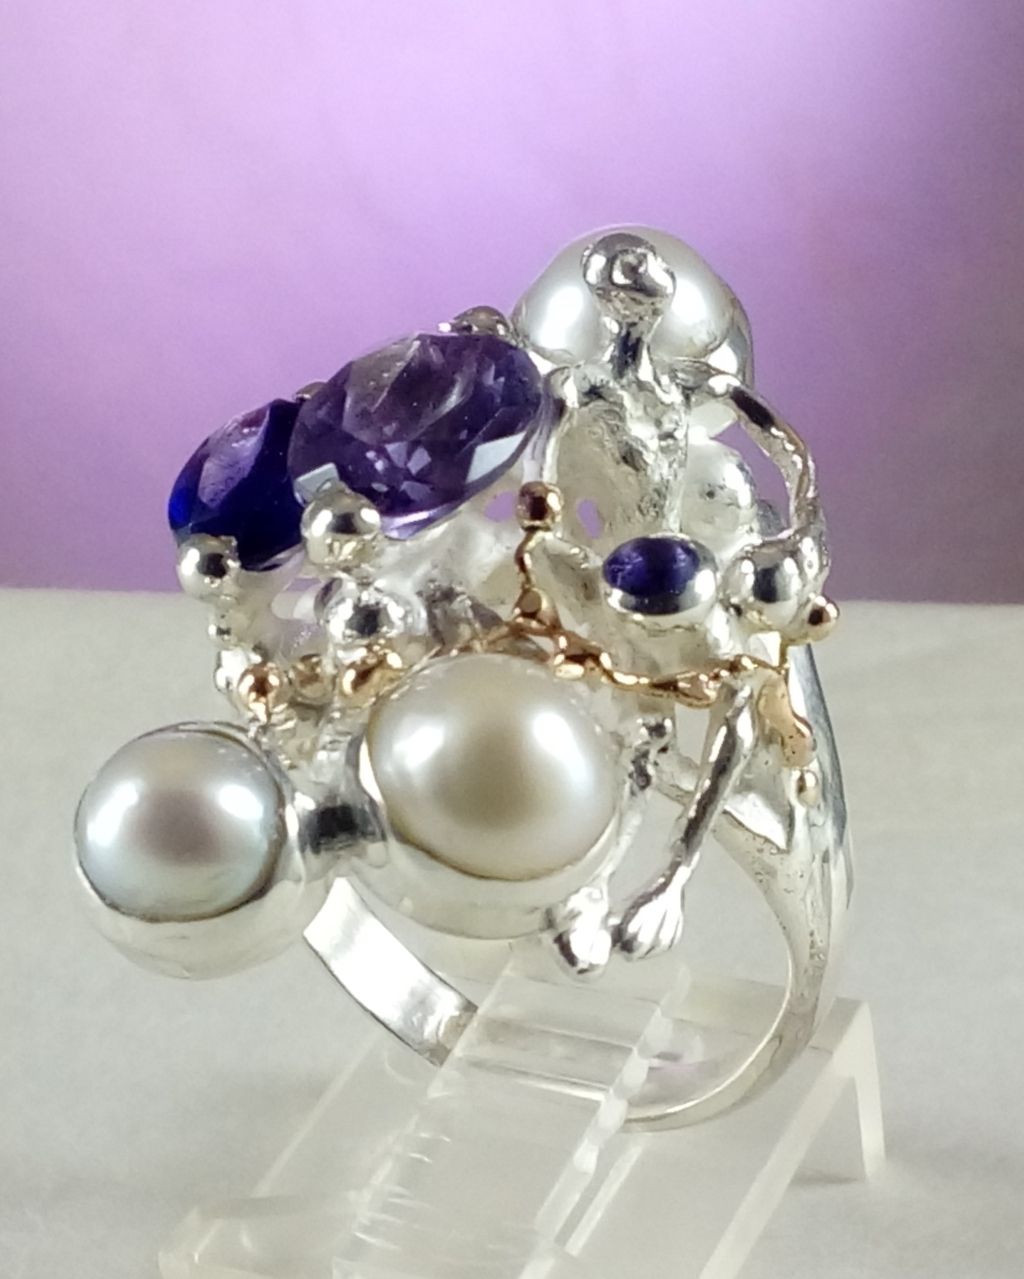 gregory pyra piro anillo escultural 8070, joyas vendidas en galerías de arte, joyas vendidas en galerías artesanales, joyas hechas a mano con amatista, joyas hechas a mano con perlas, joyas que nadie más tiene, joyas escultóricas, anillo hecho a mano con amatista y perla